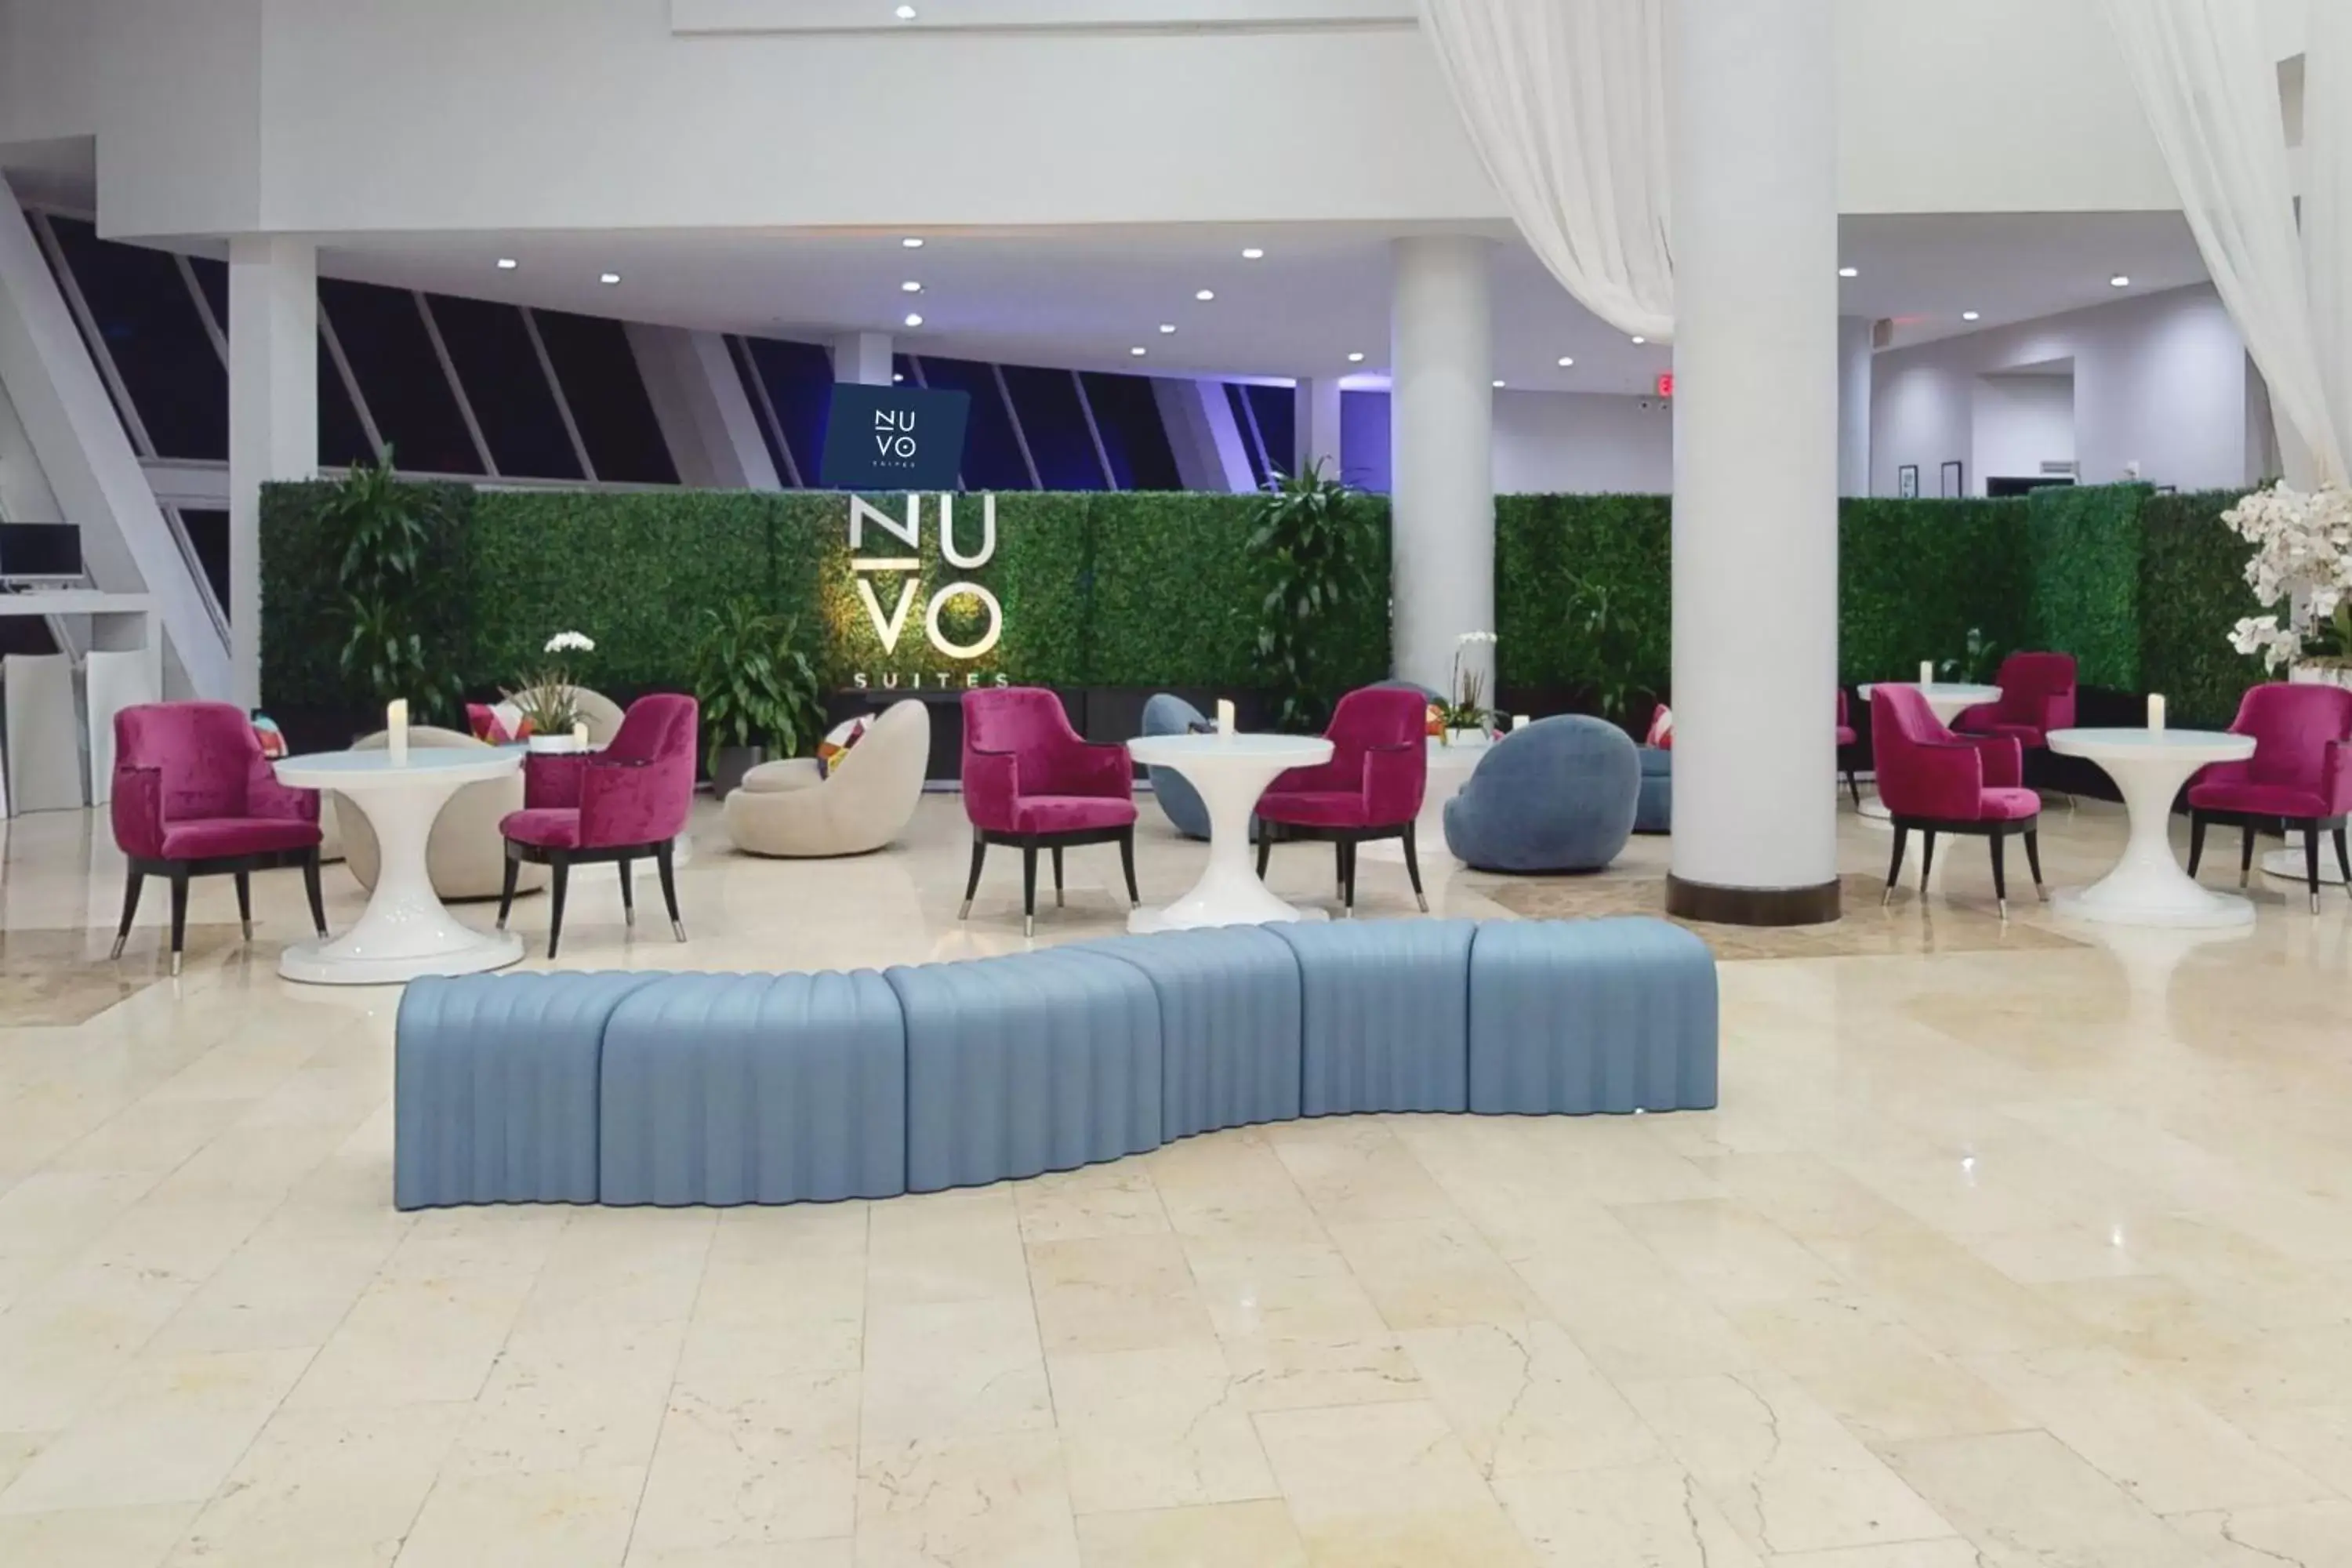 Lobby or reception in Nuvo Suites Hotel - Miami Doral